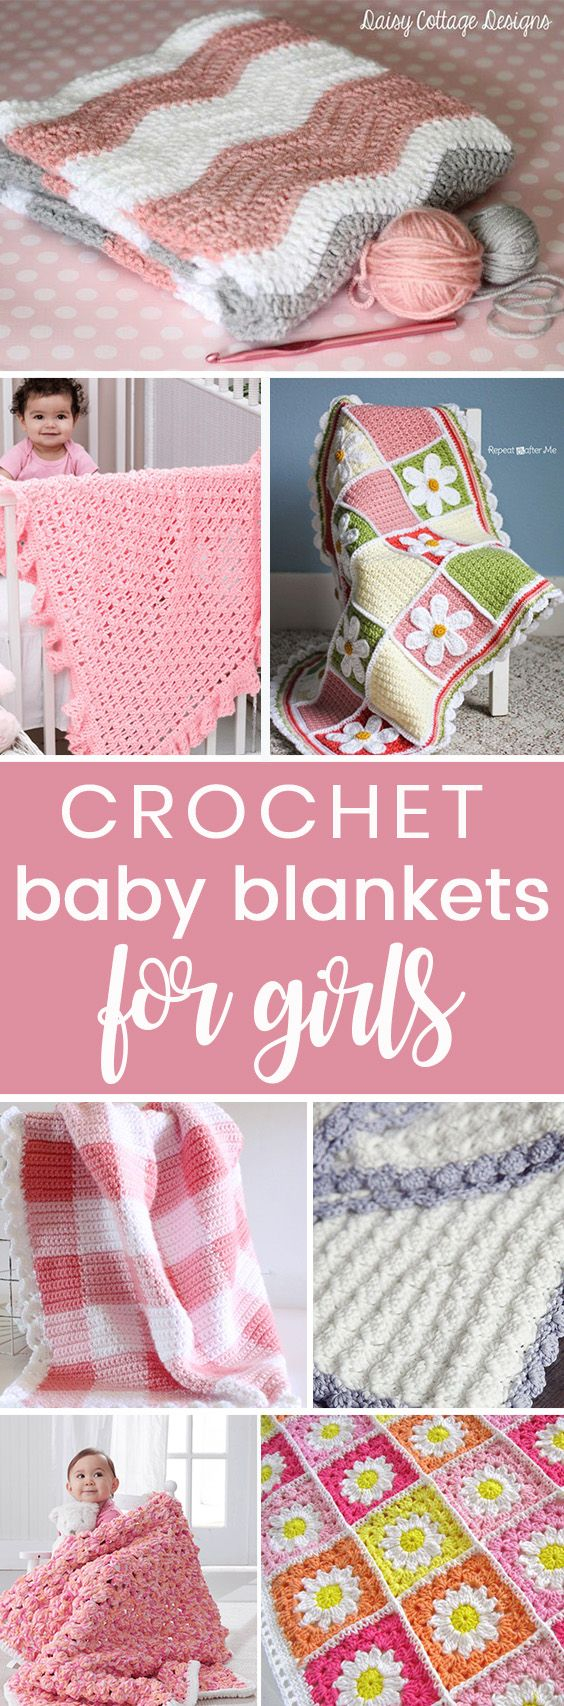 Baby Girl Blanket Knitting Patterns Knitting Patterns For Ba Blankets Crochet These Easy Beginner Free